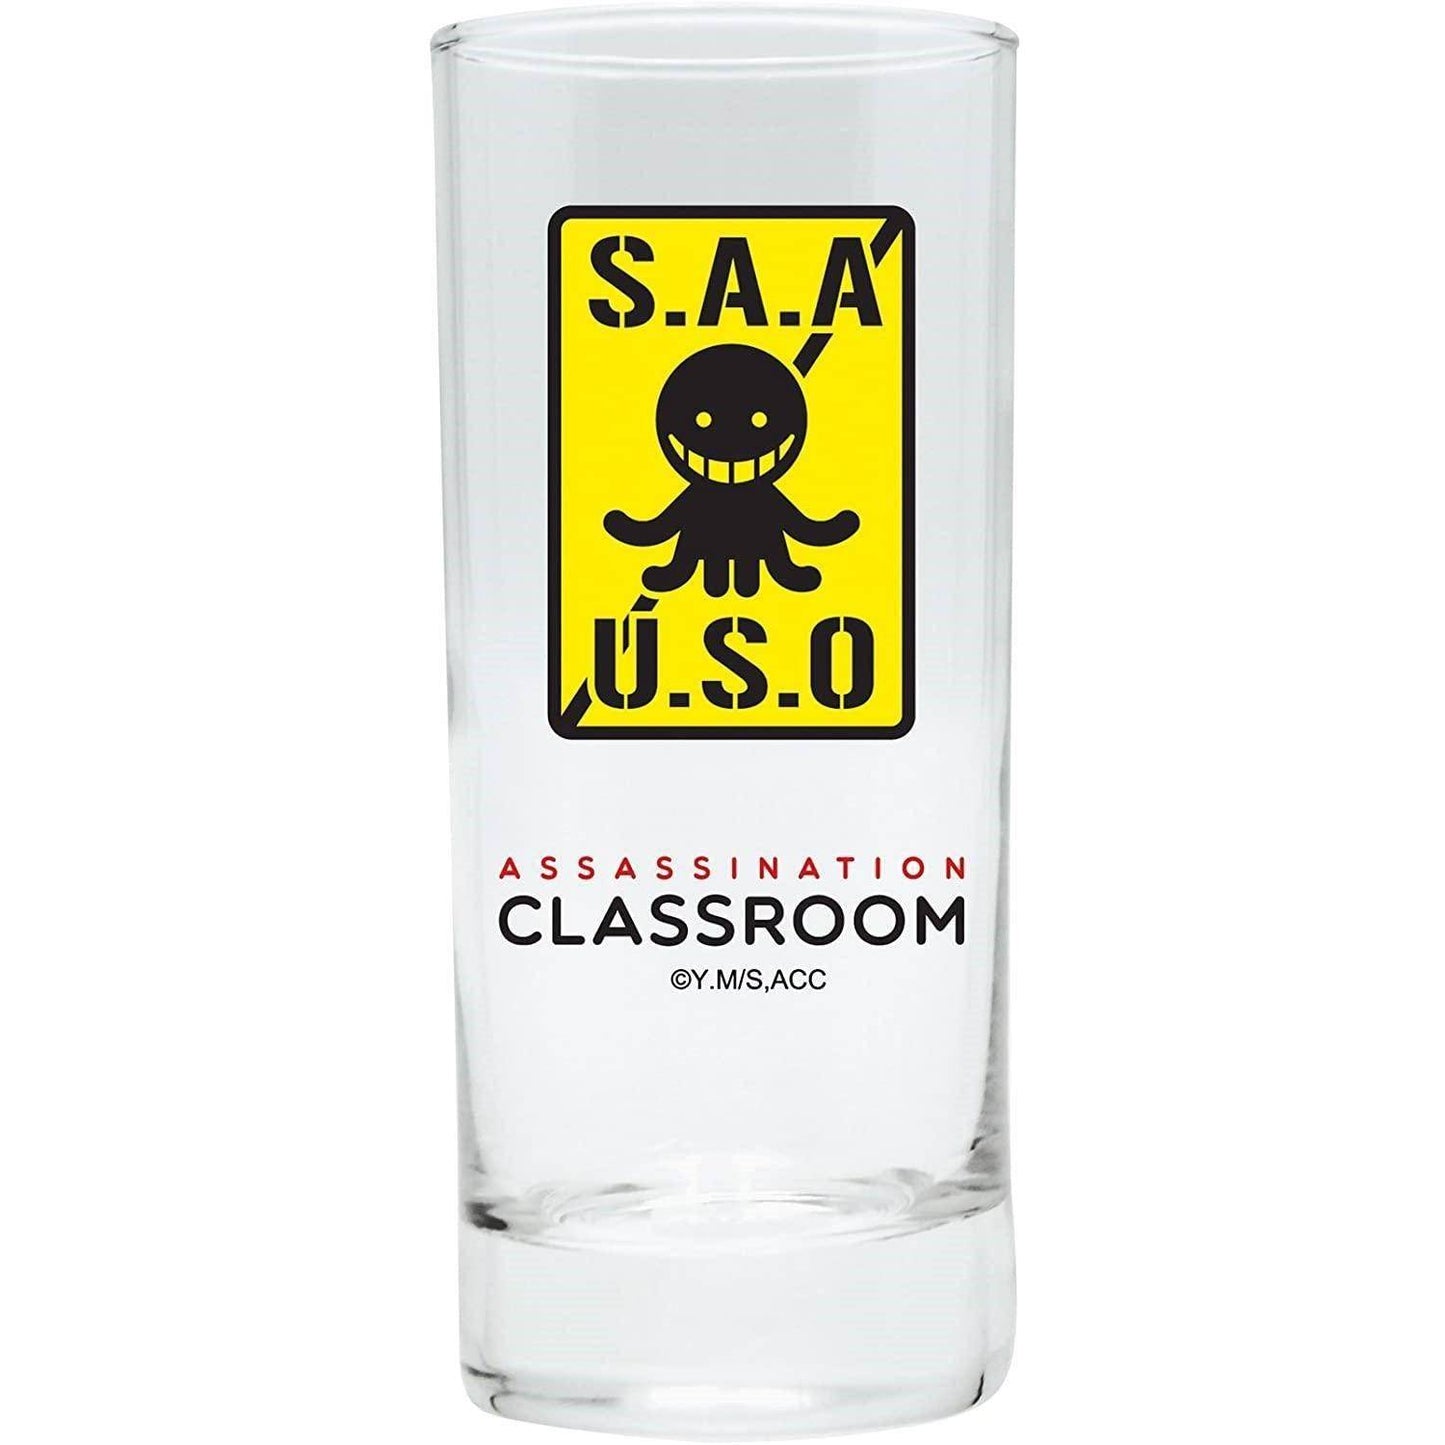 Assassination Classroom - Glas "S.A.U.S.O."